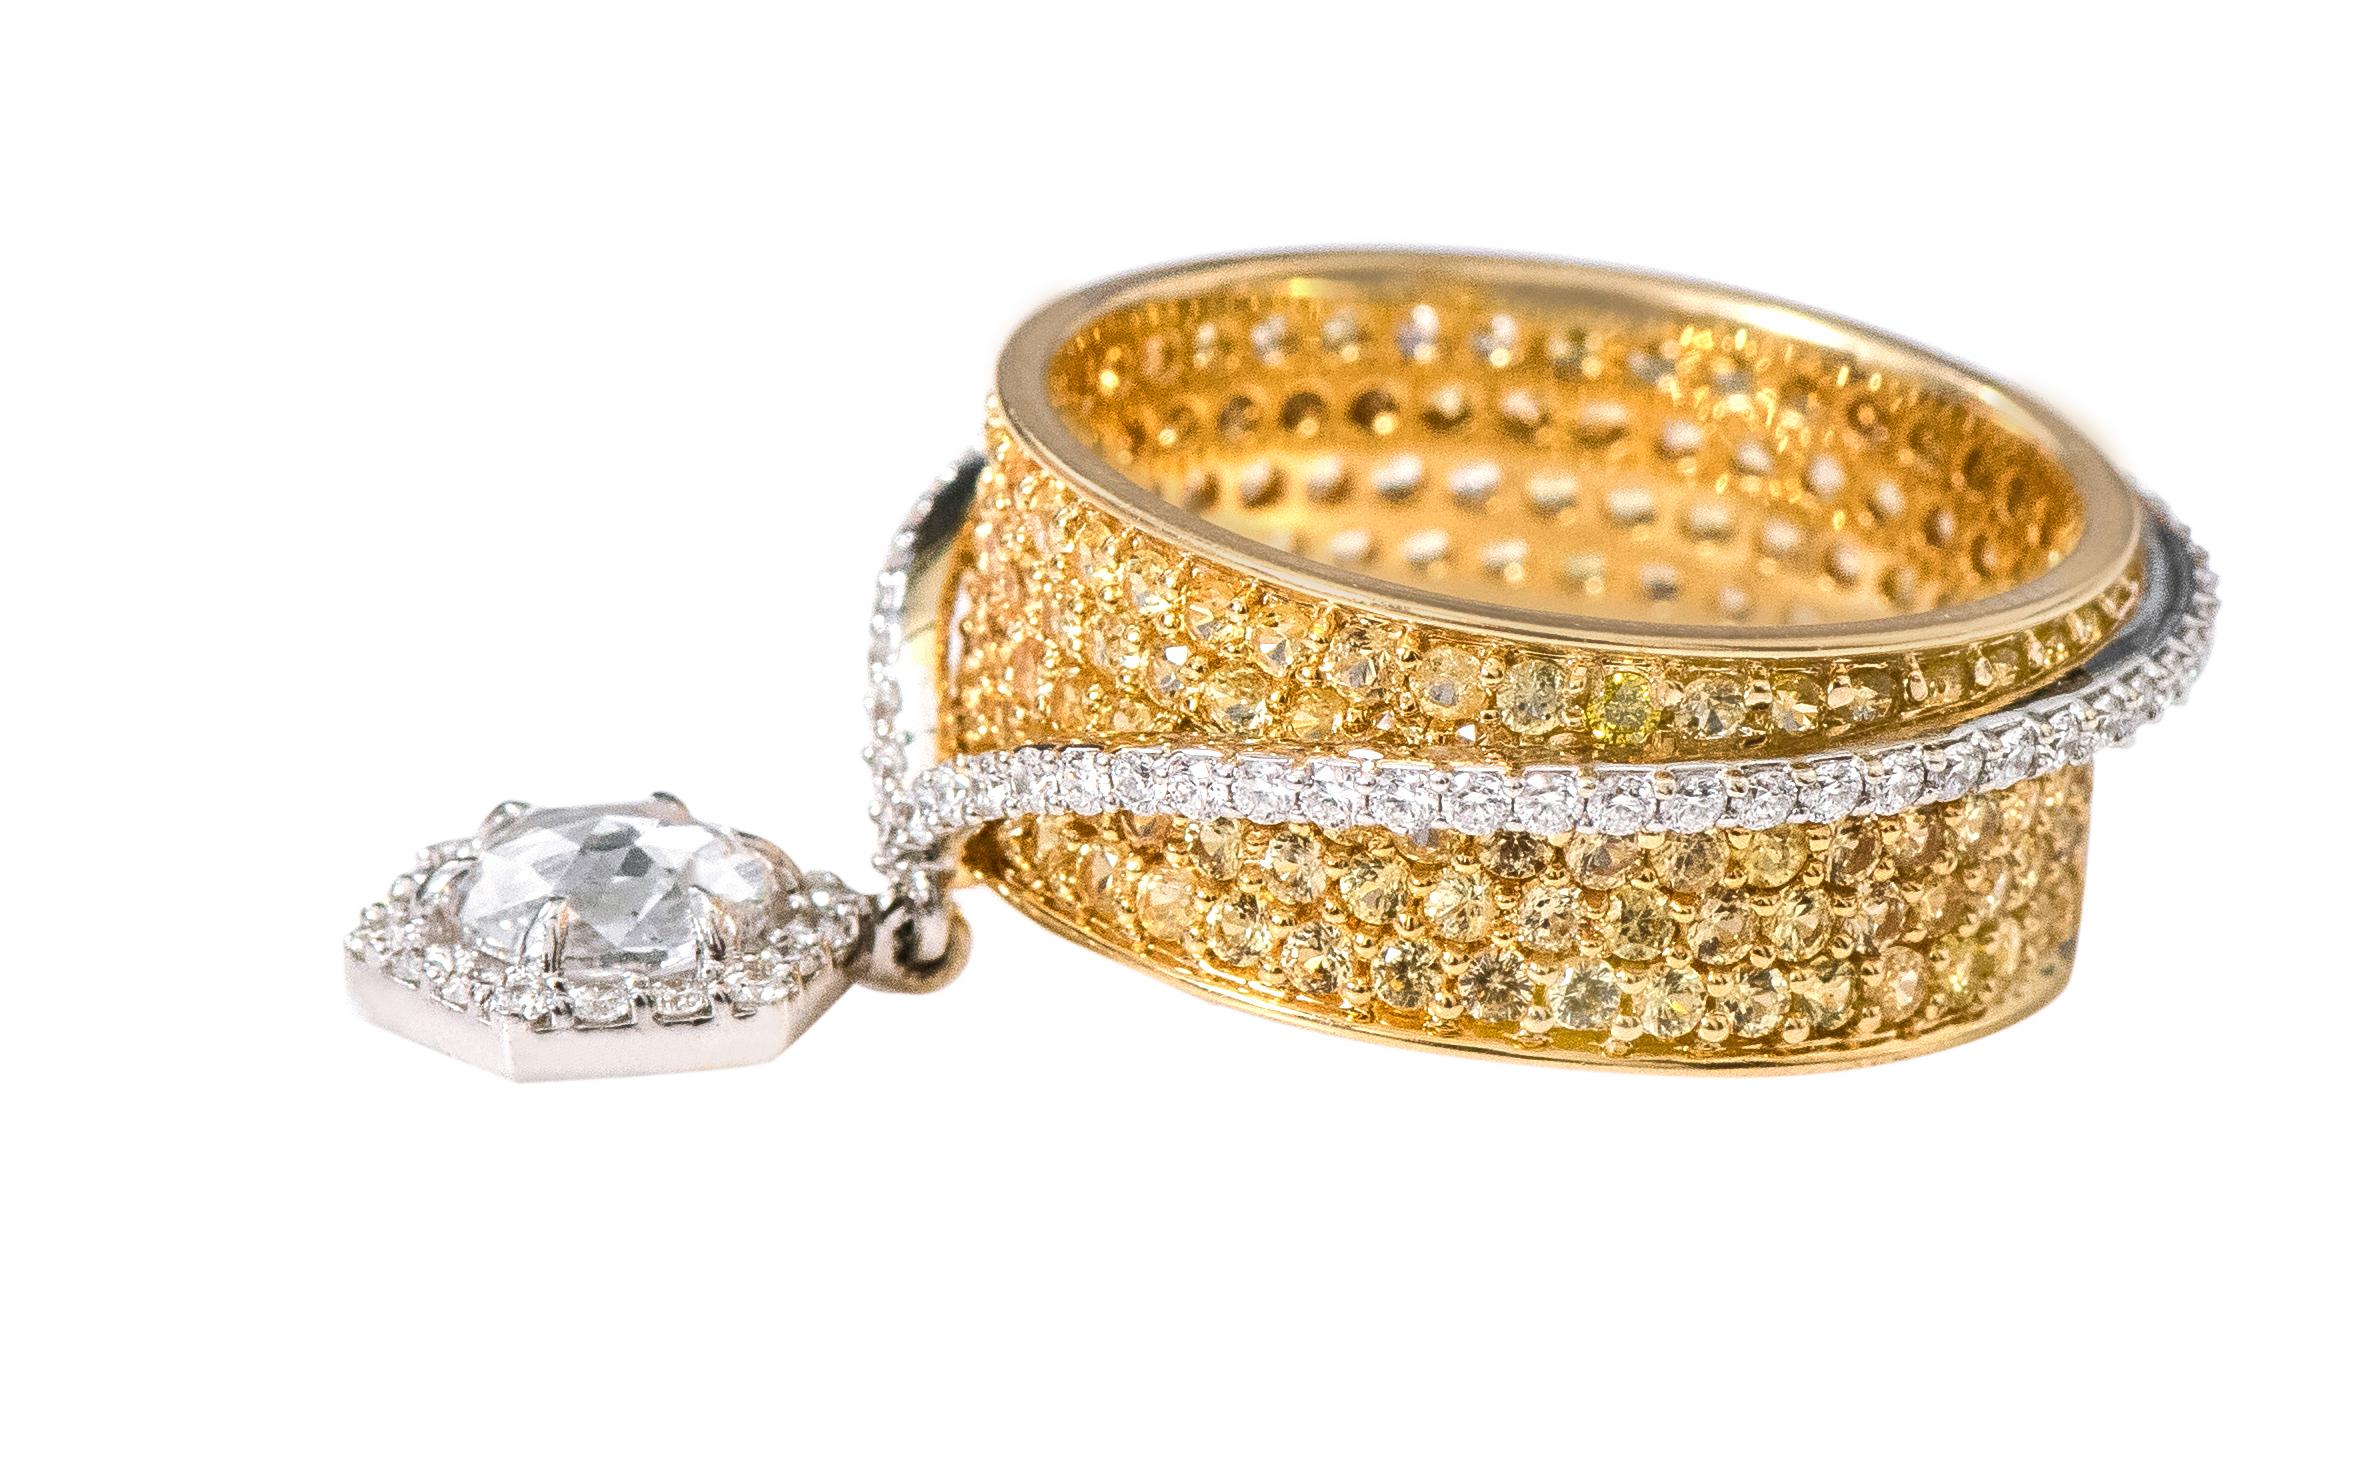 18 Karat Gold Solitär Diamant im Rosenschliff und gelber Saphir Solitär Fashion Ring

Dieses raffinierte Band aus lebendigem gelbem Saphir und Diamanten ist elegant. Die 5 Reihen perfekt platzierter runder gelber Saphire in Pflastertechnik bilden